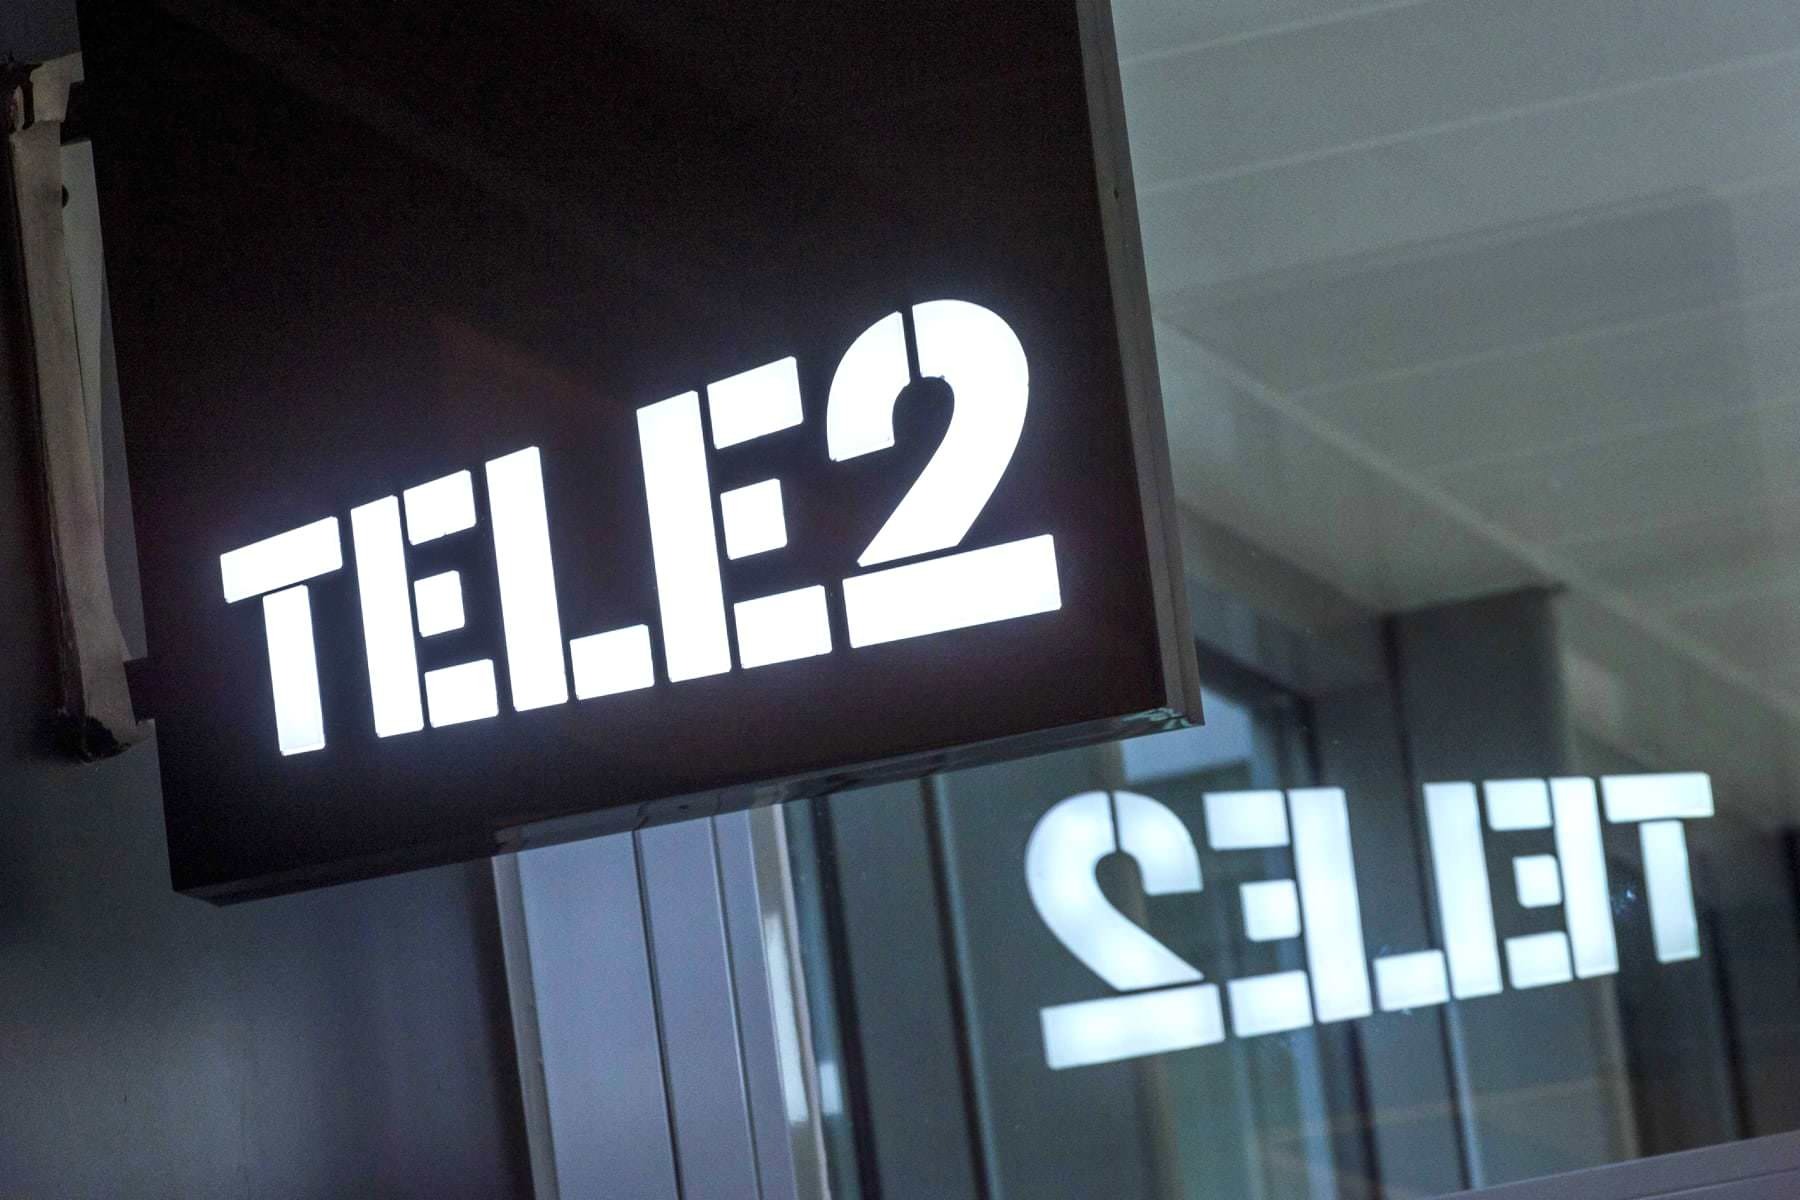    tele2      